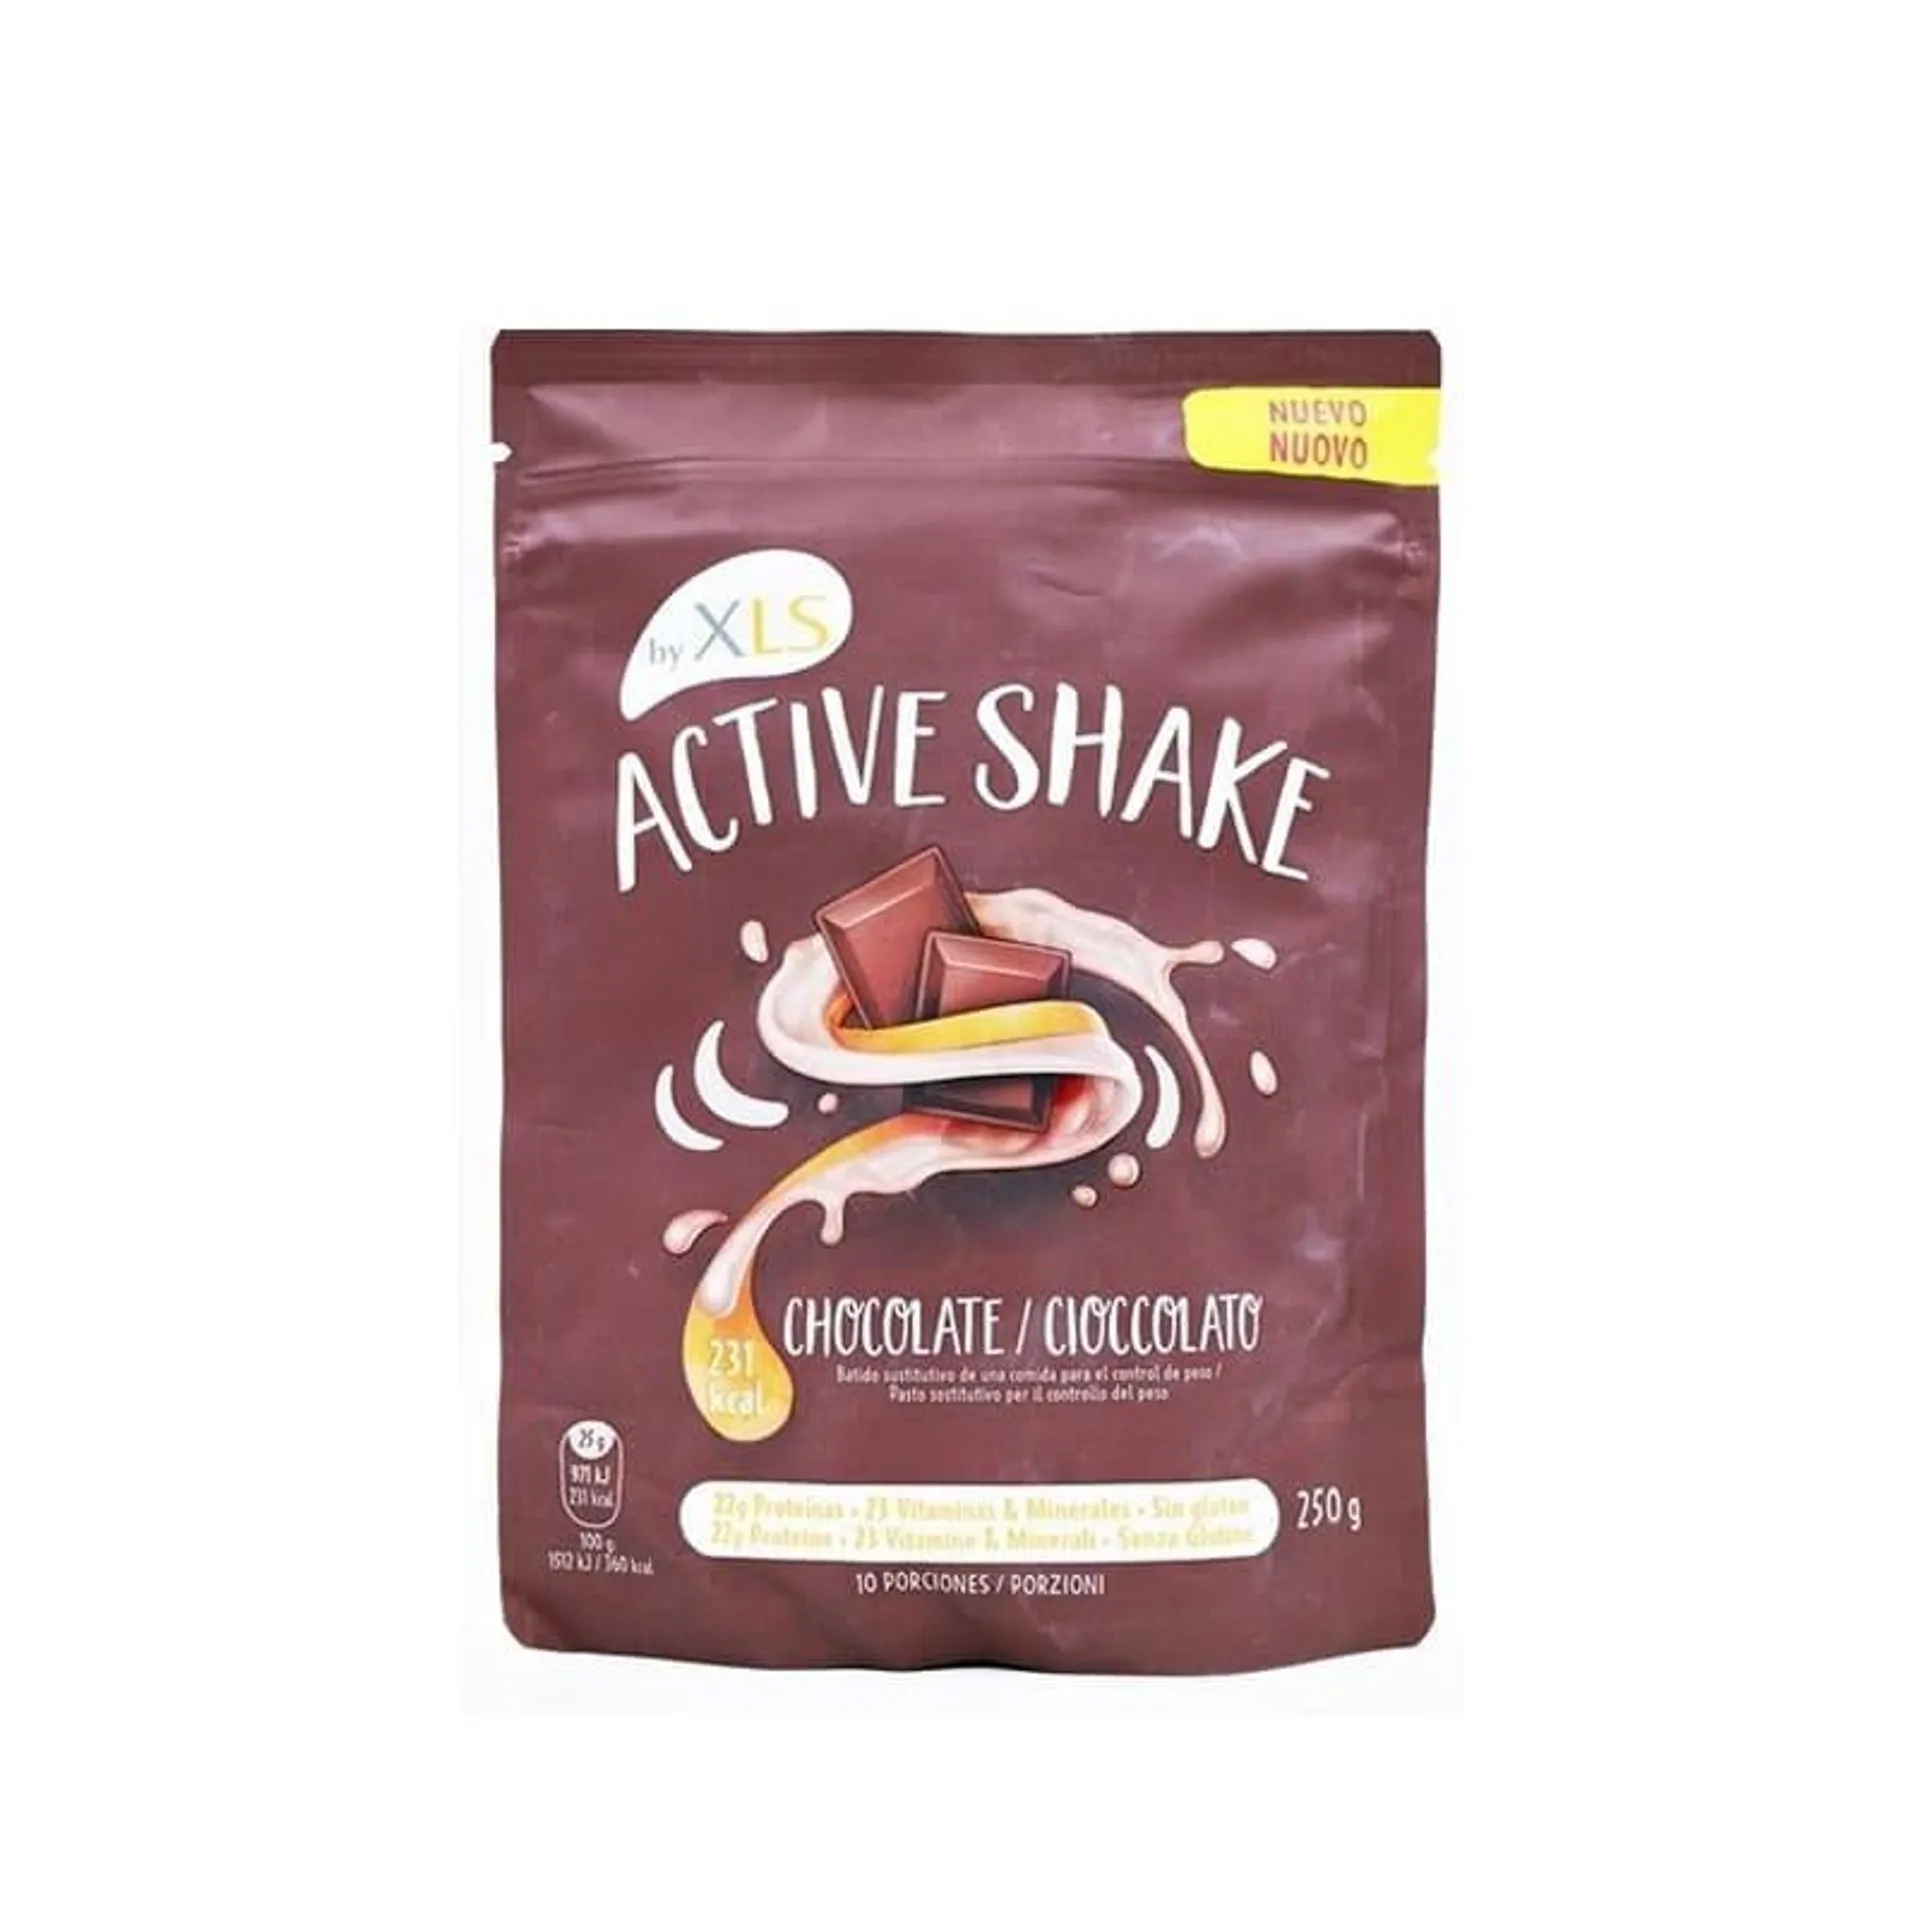 Active shake batido chocolate 250g